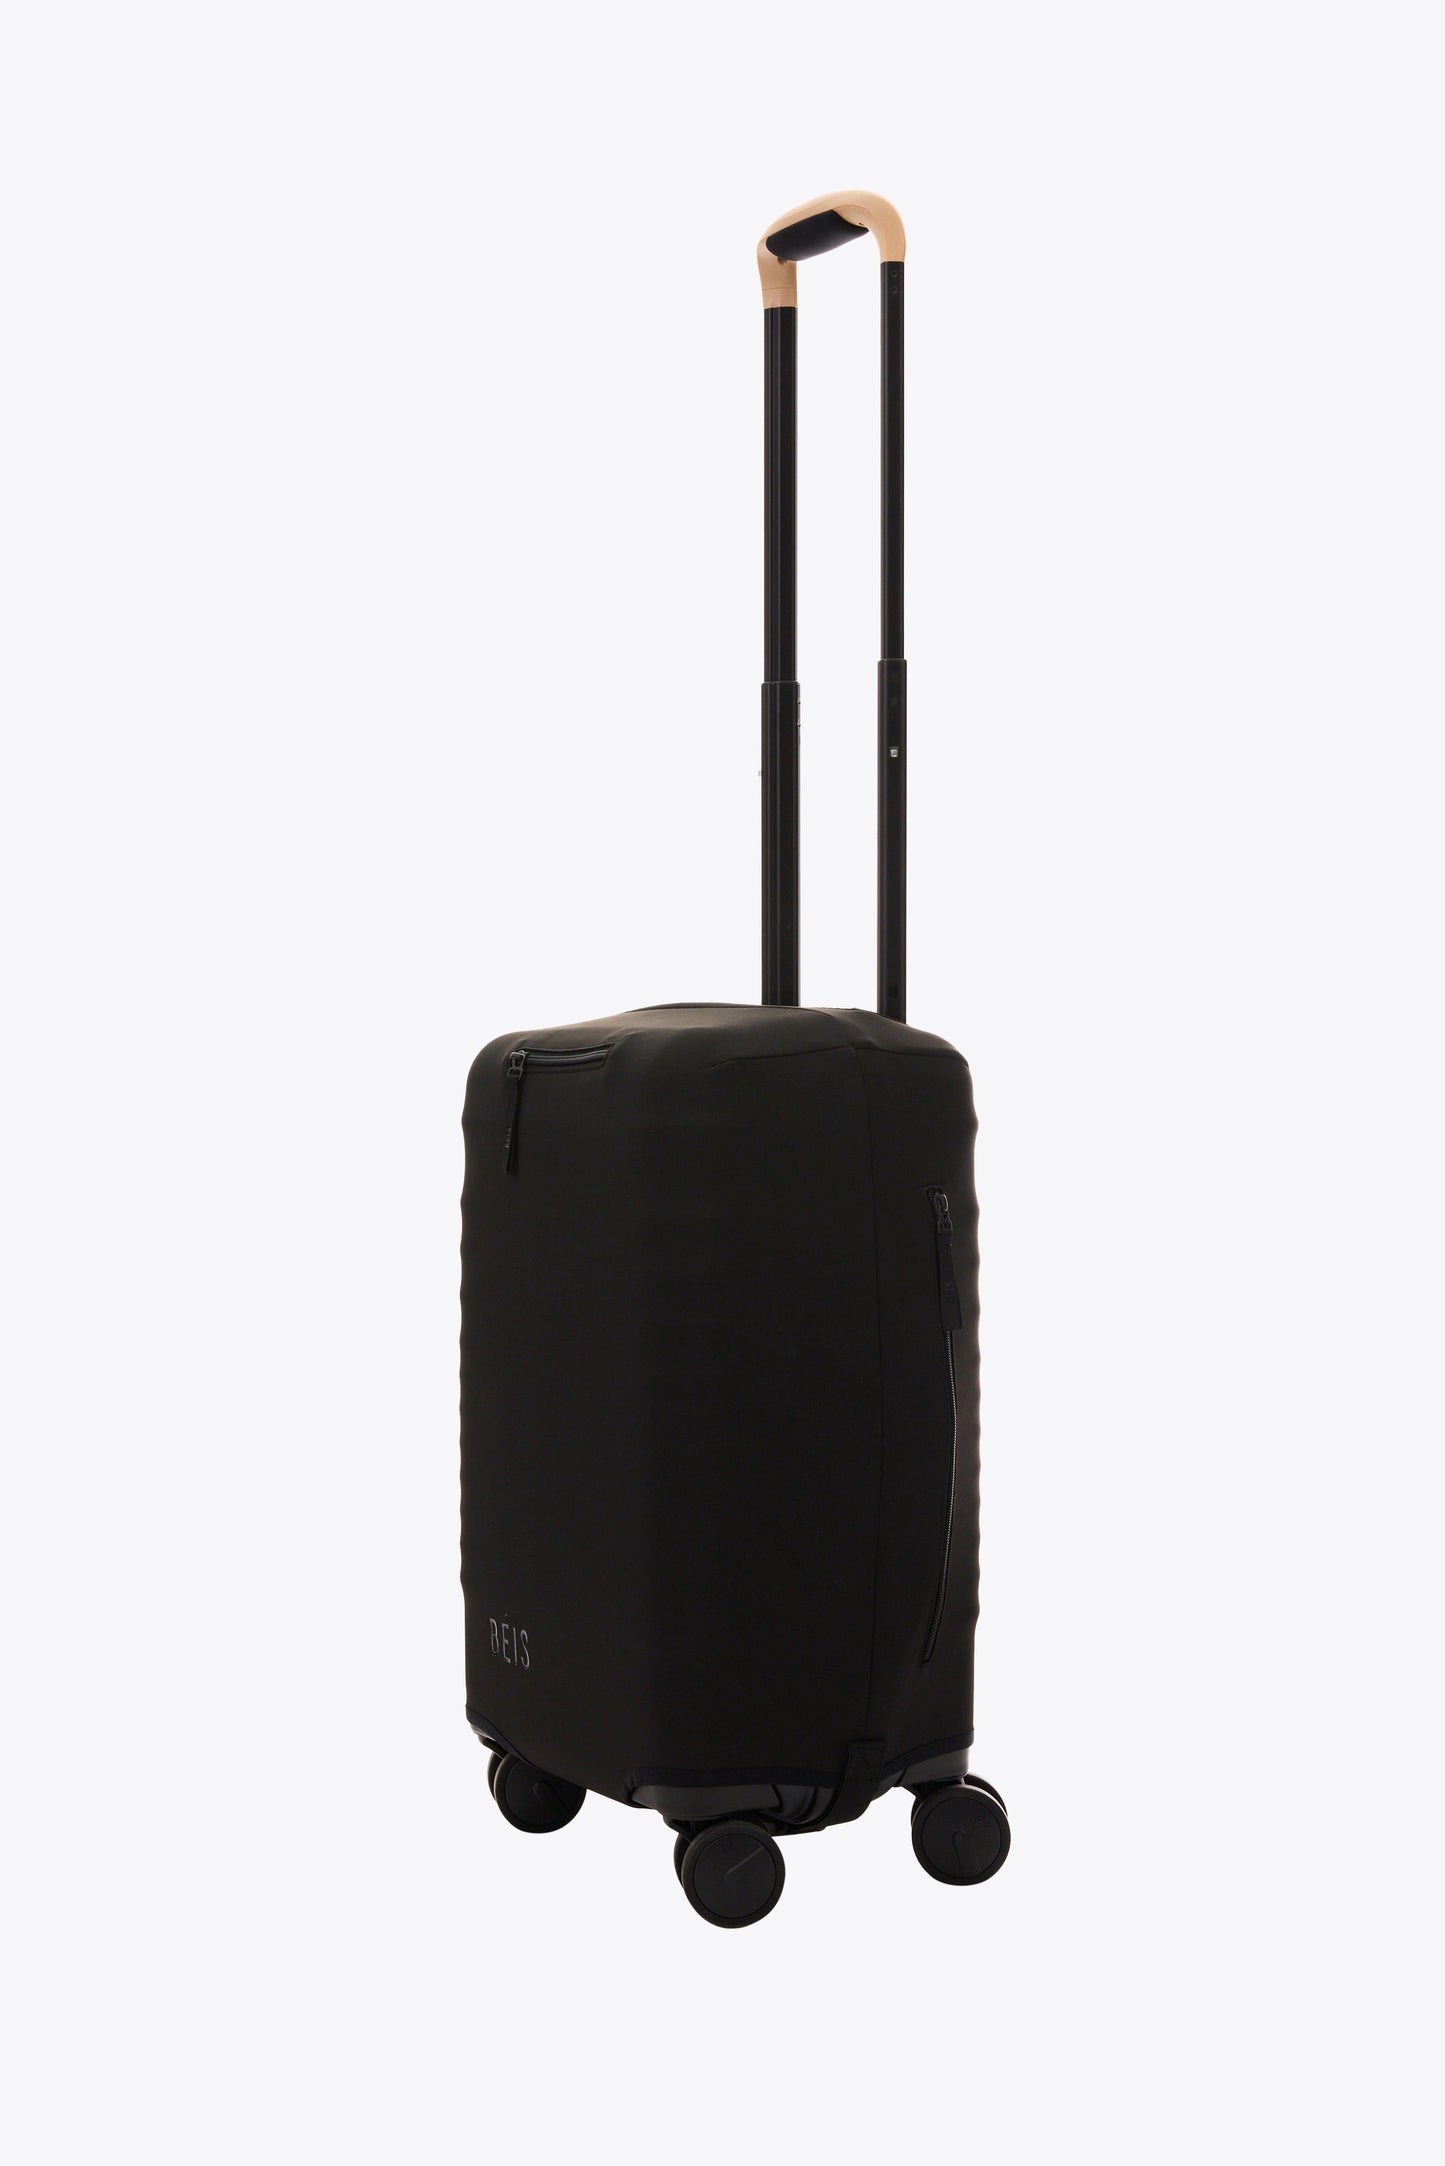 Le petit couvre-bagages de cabine en noir